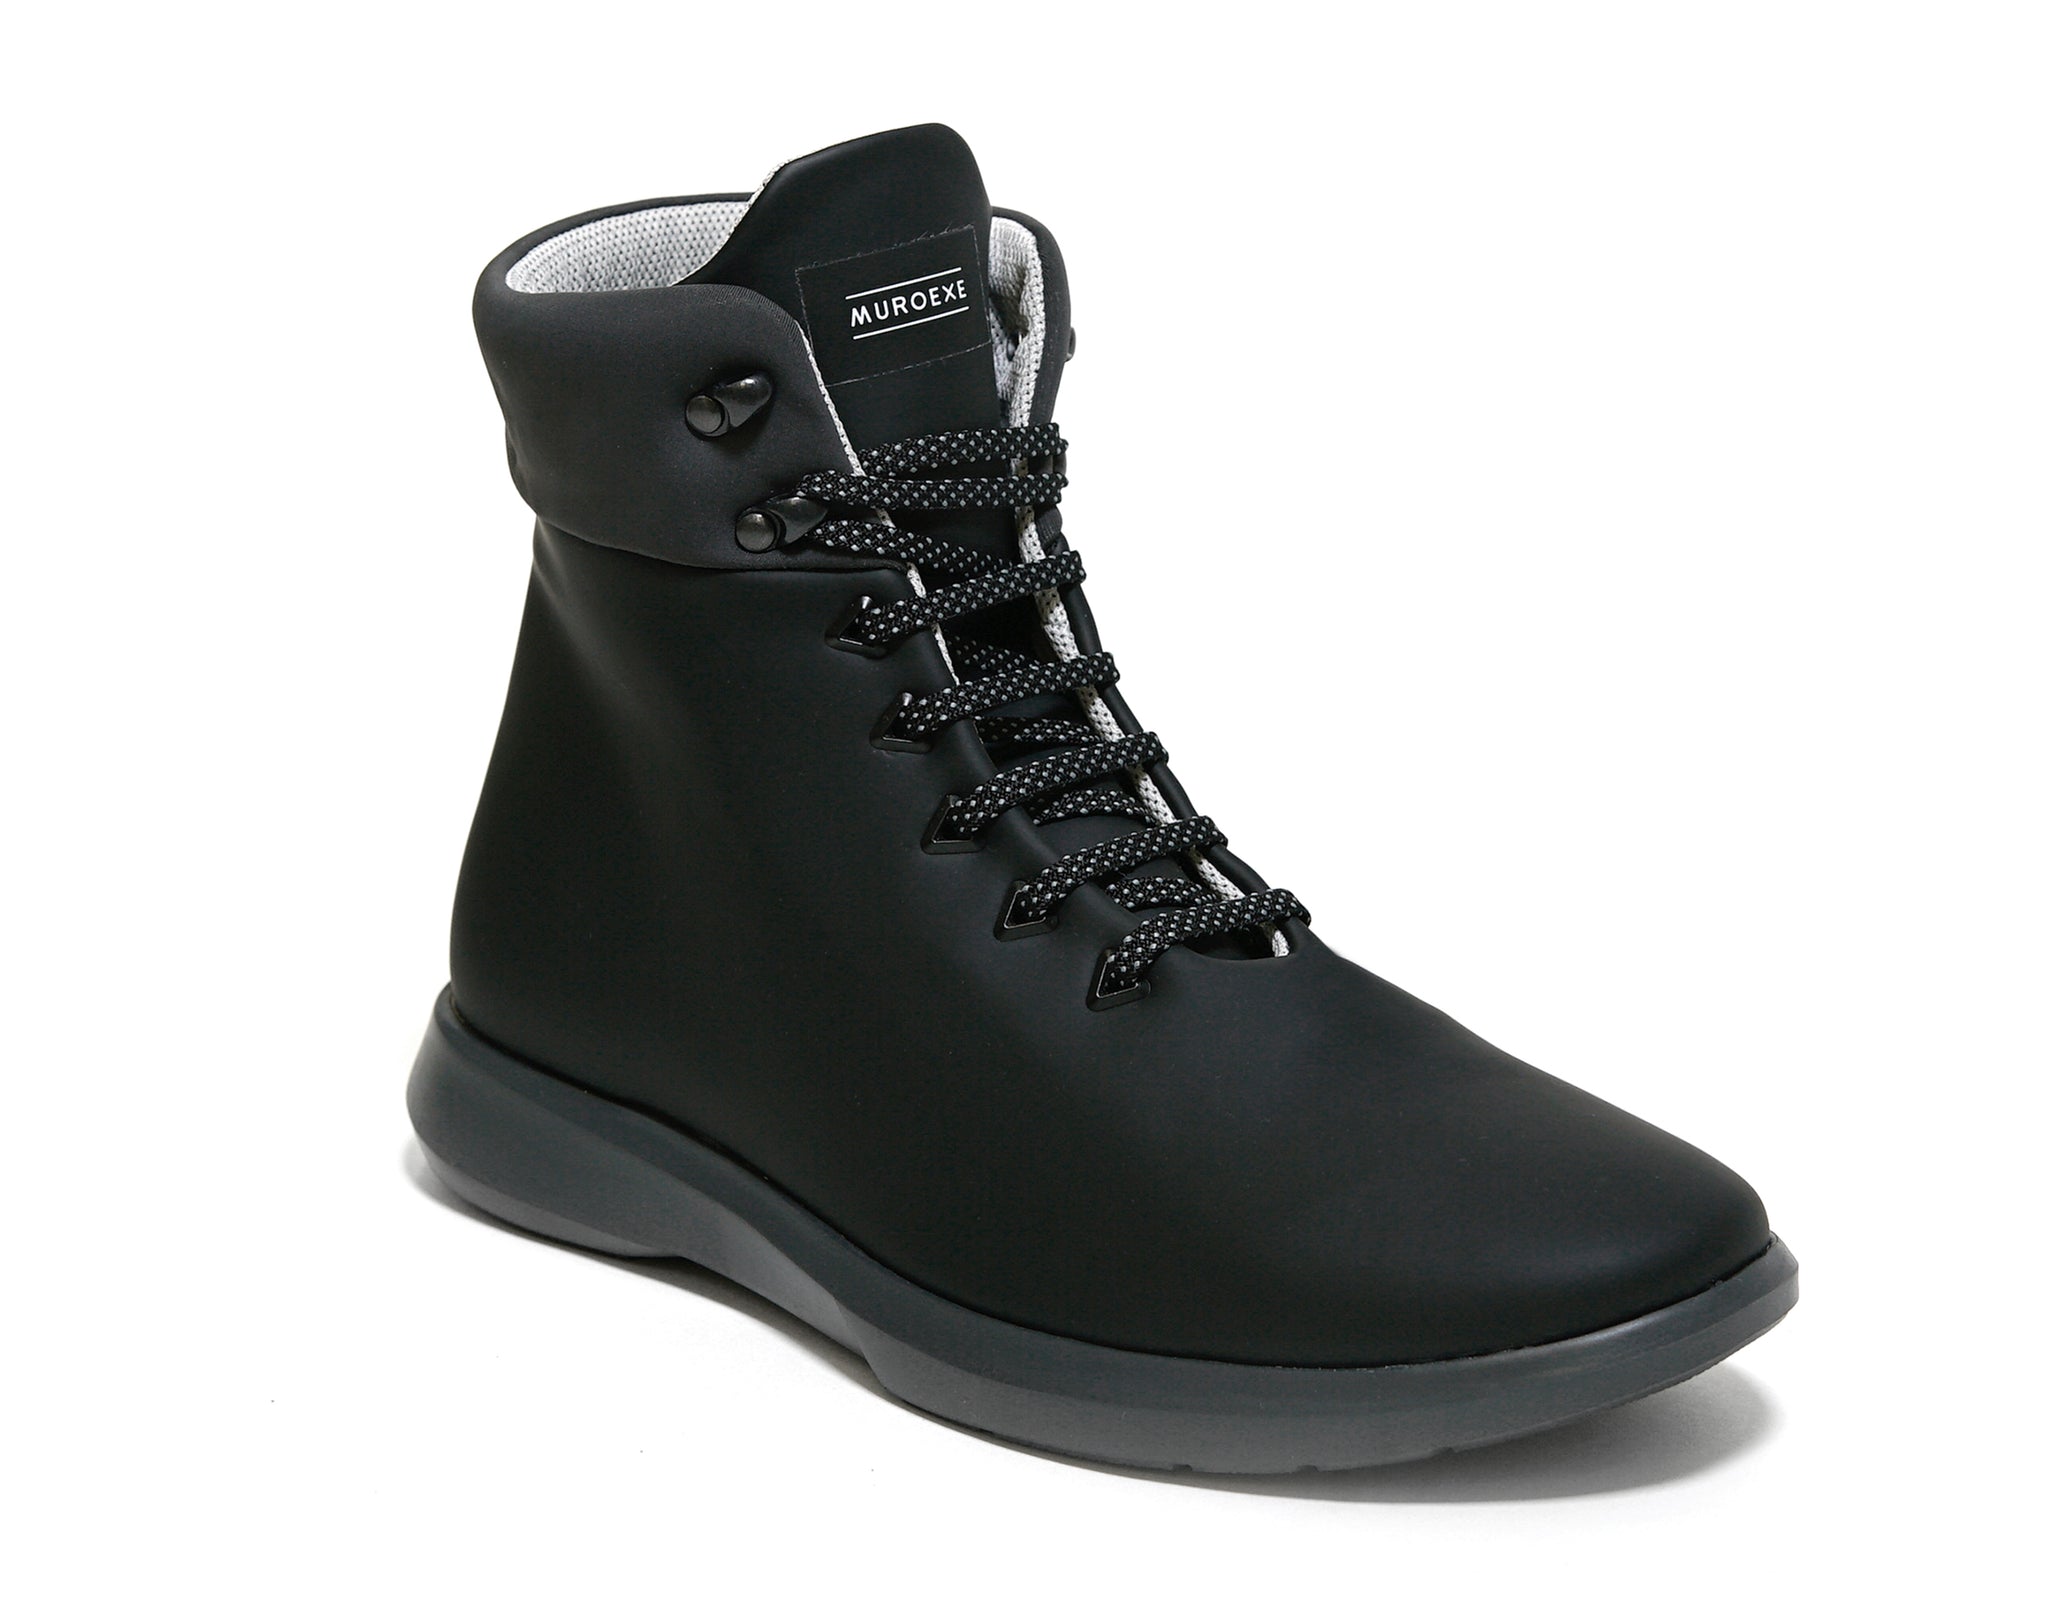 Boots Materia Black Muroexe | Official Store ® – Muroexe ® | Official Site